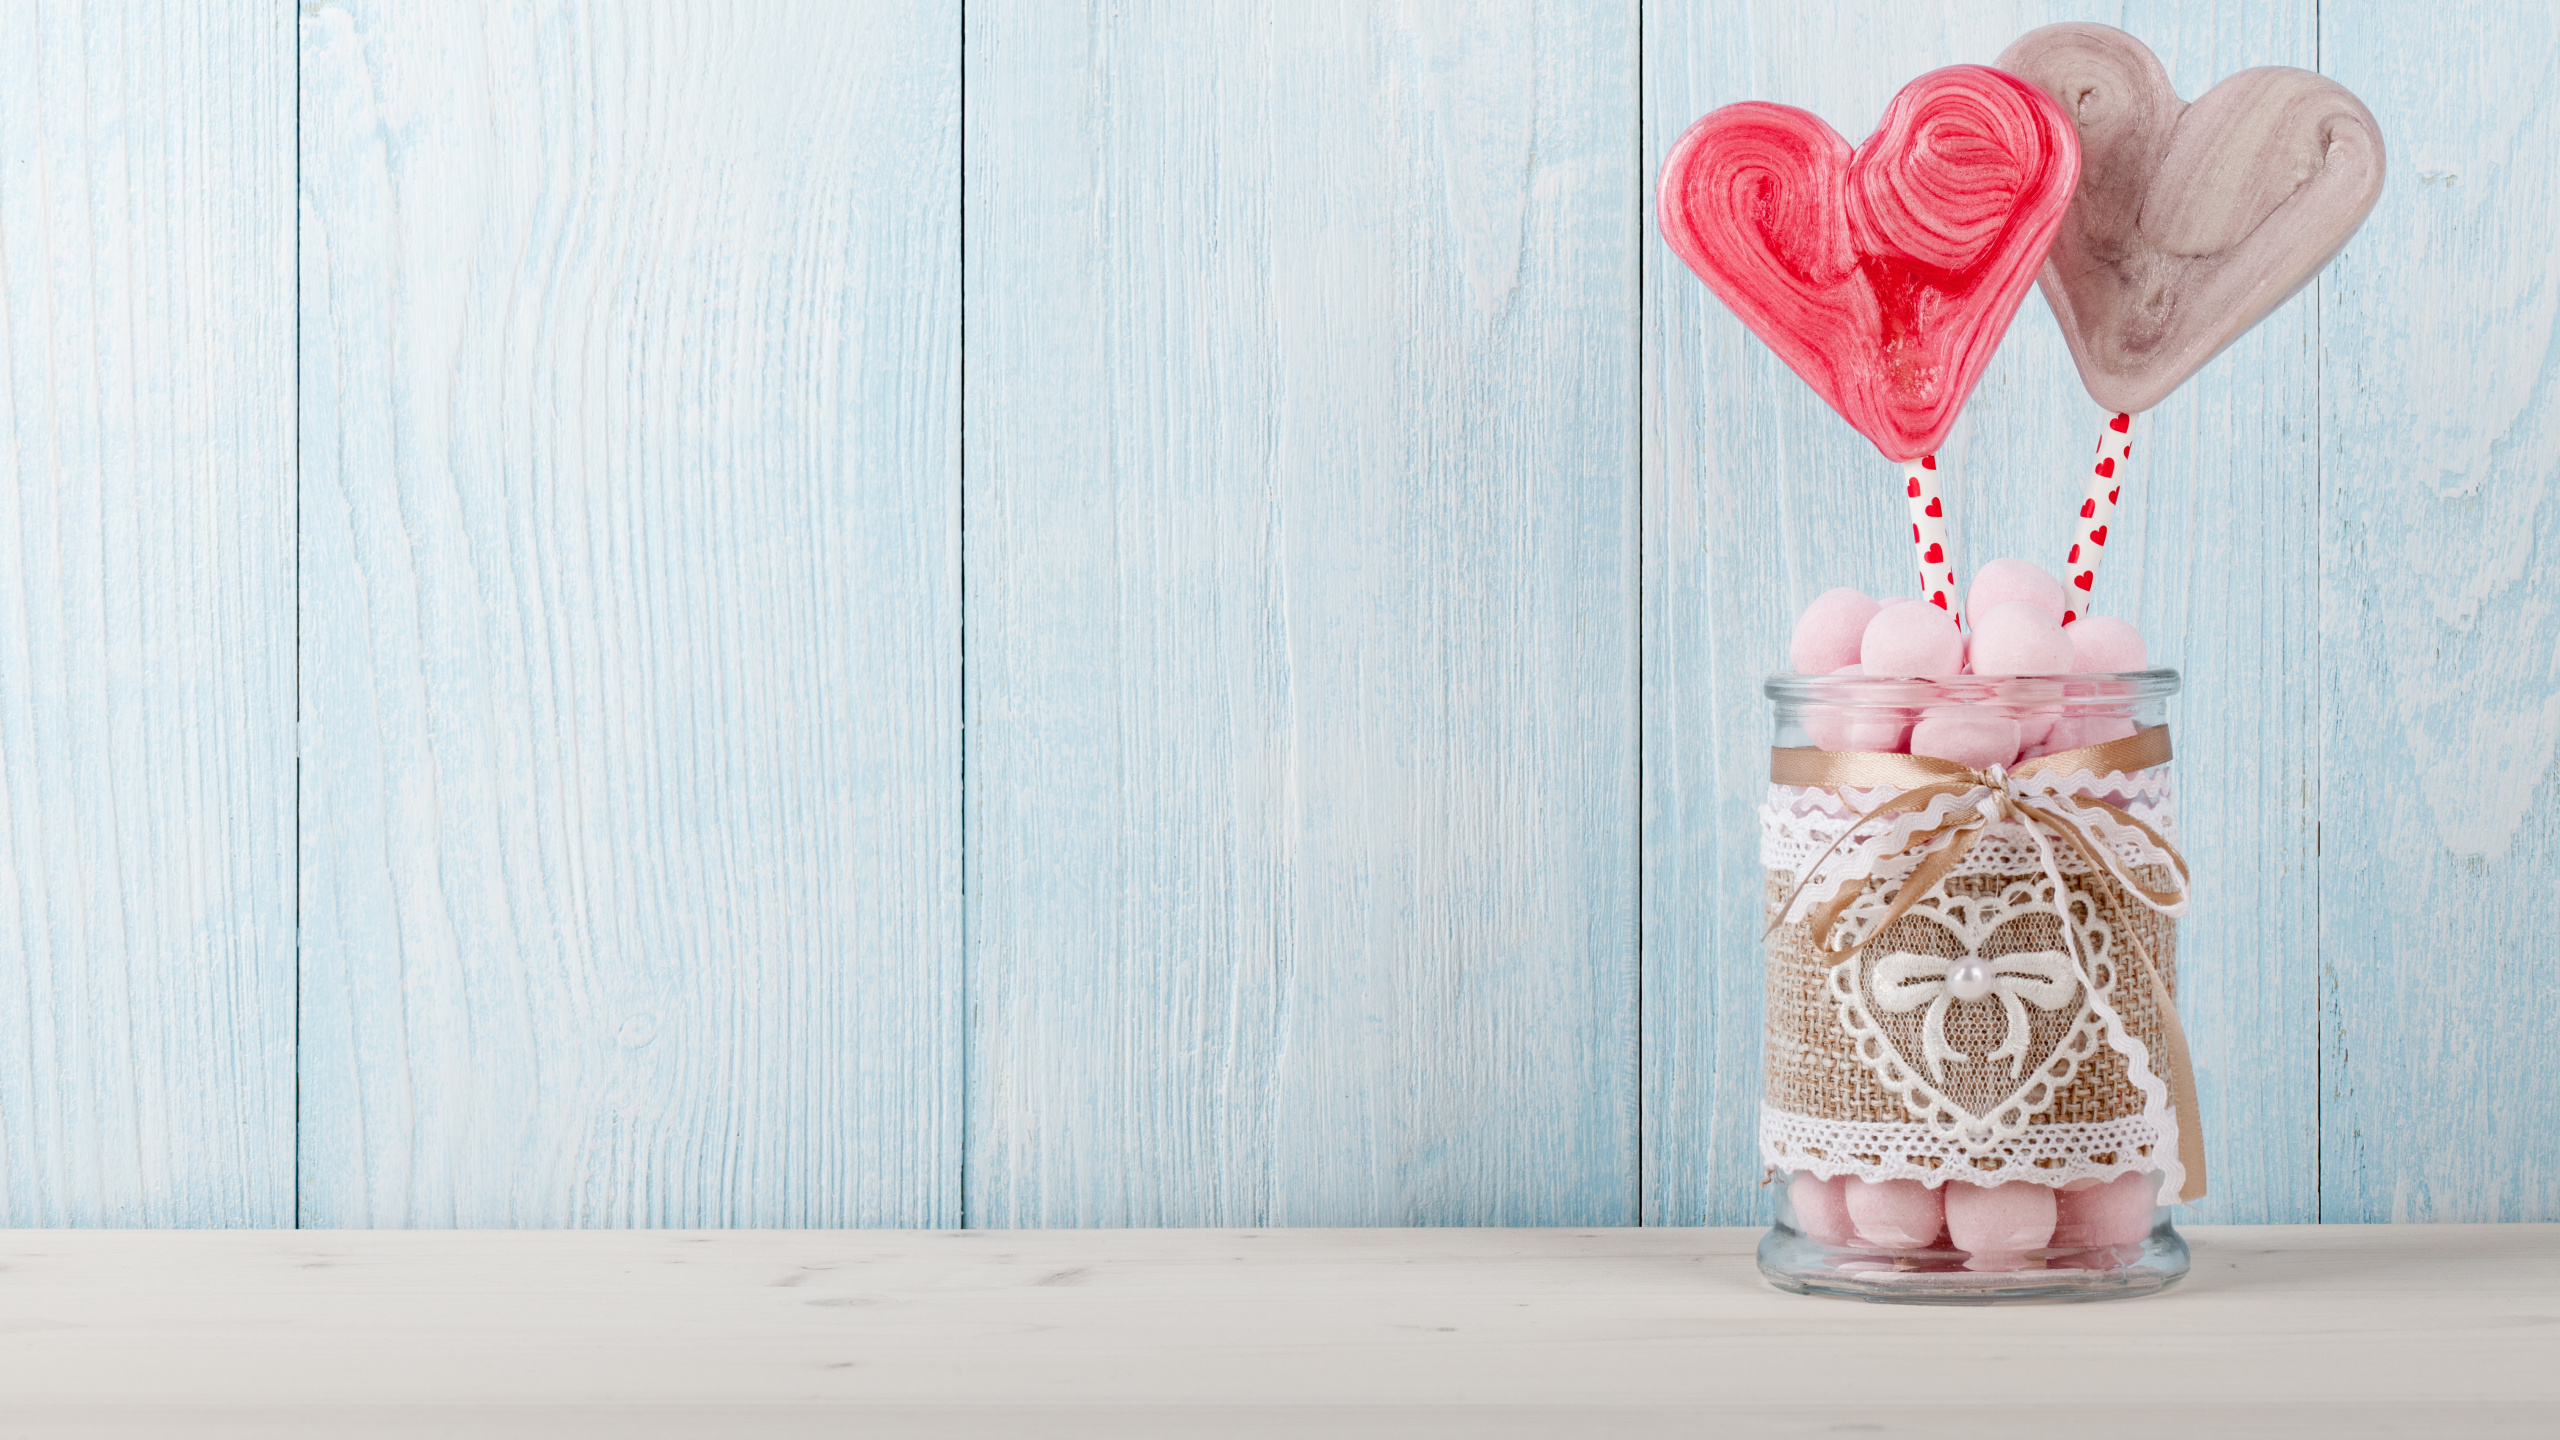 心脏, 浪漫, 粉红色, 爱情, 甜头 壁纸 2560x1440 允许